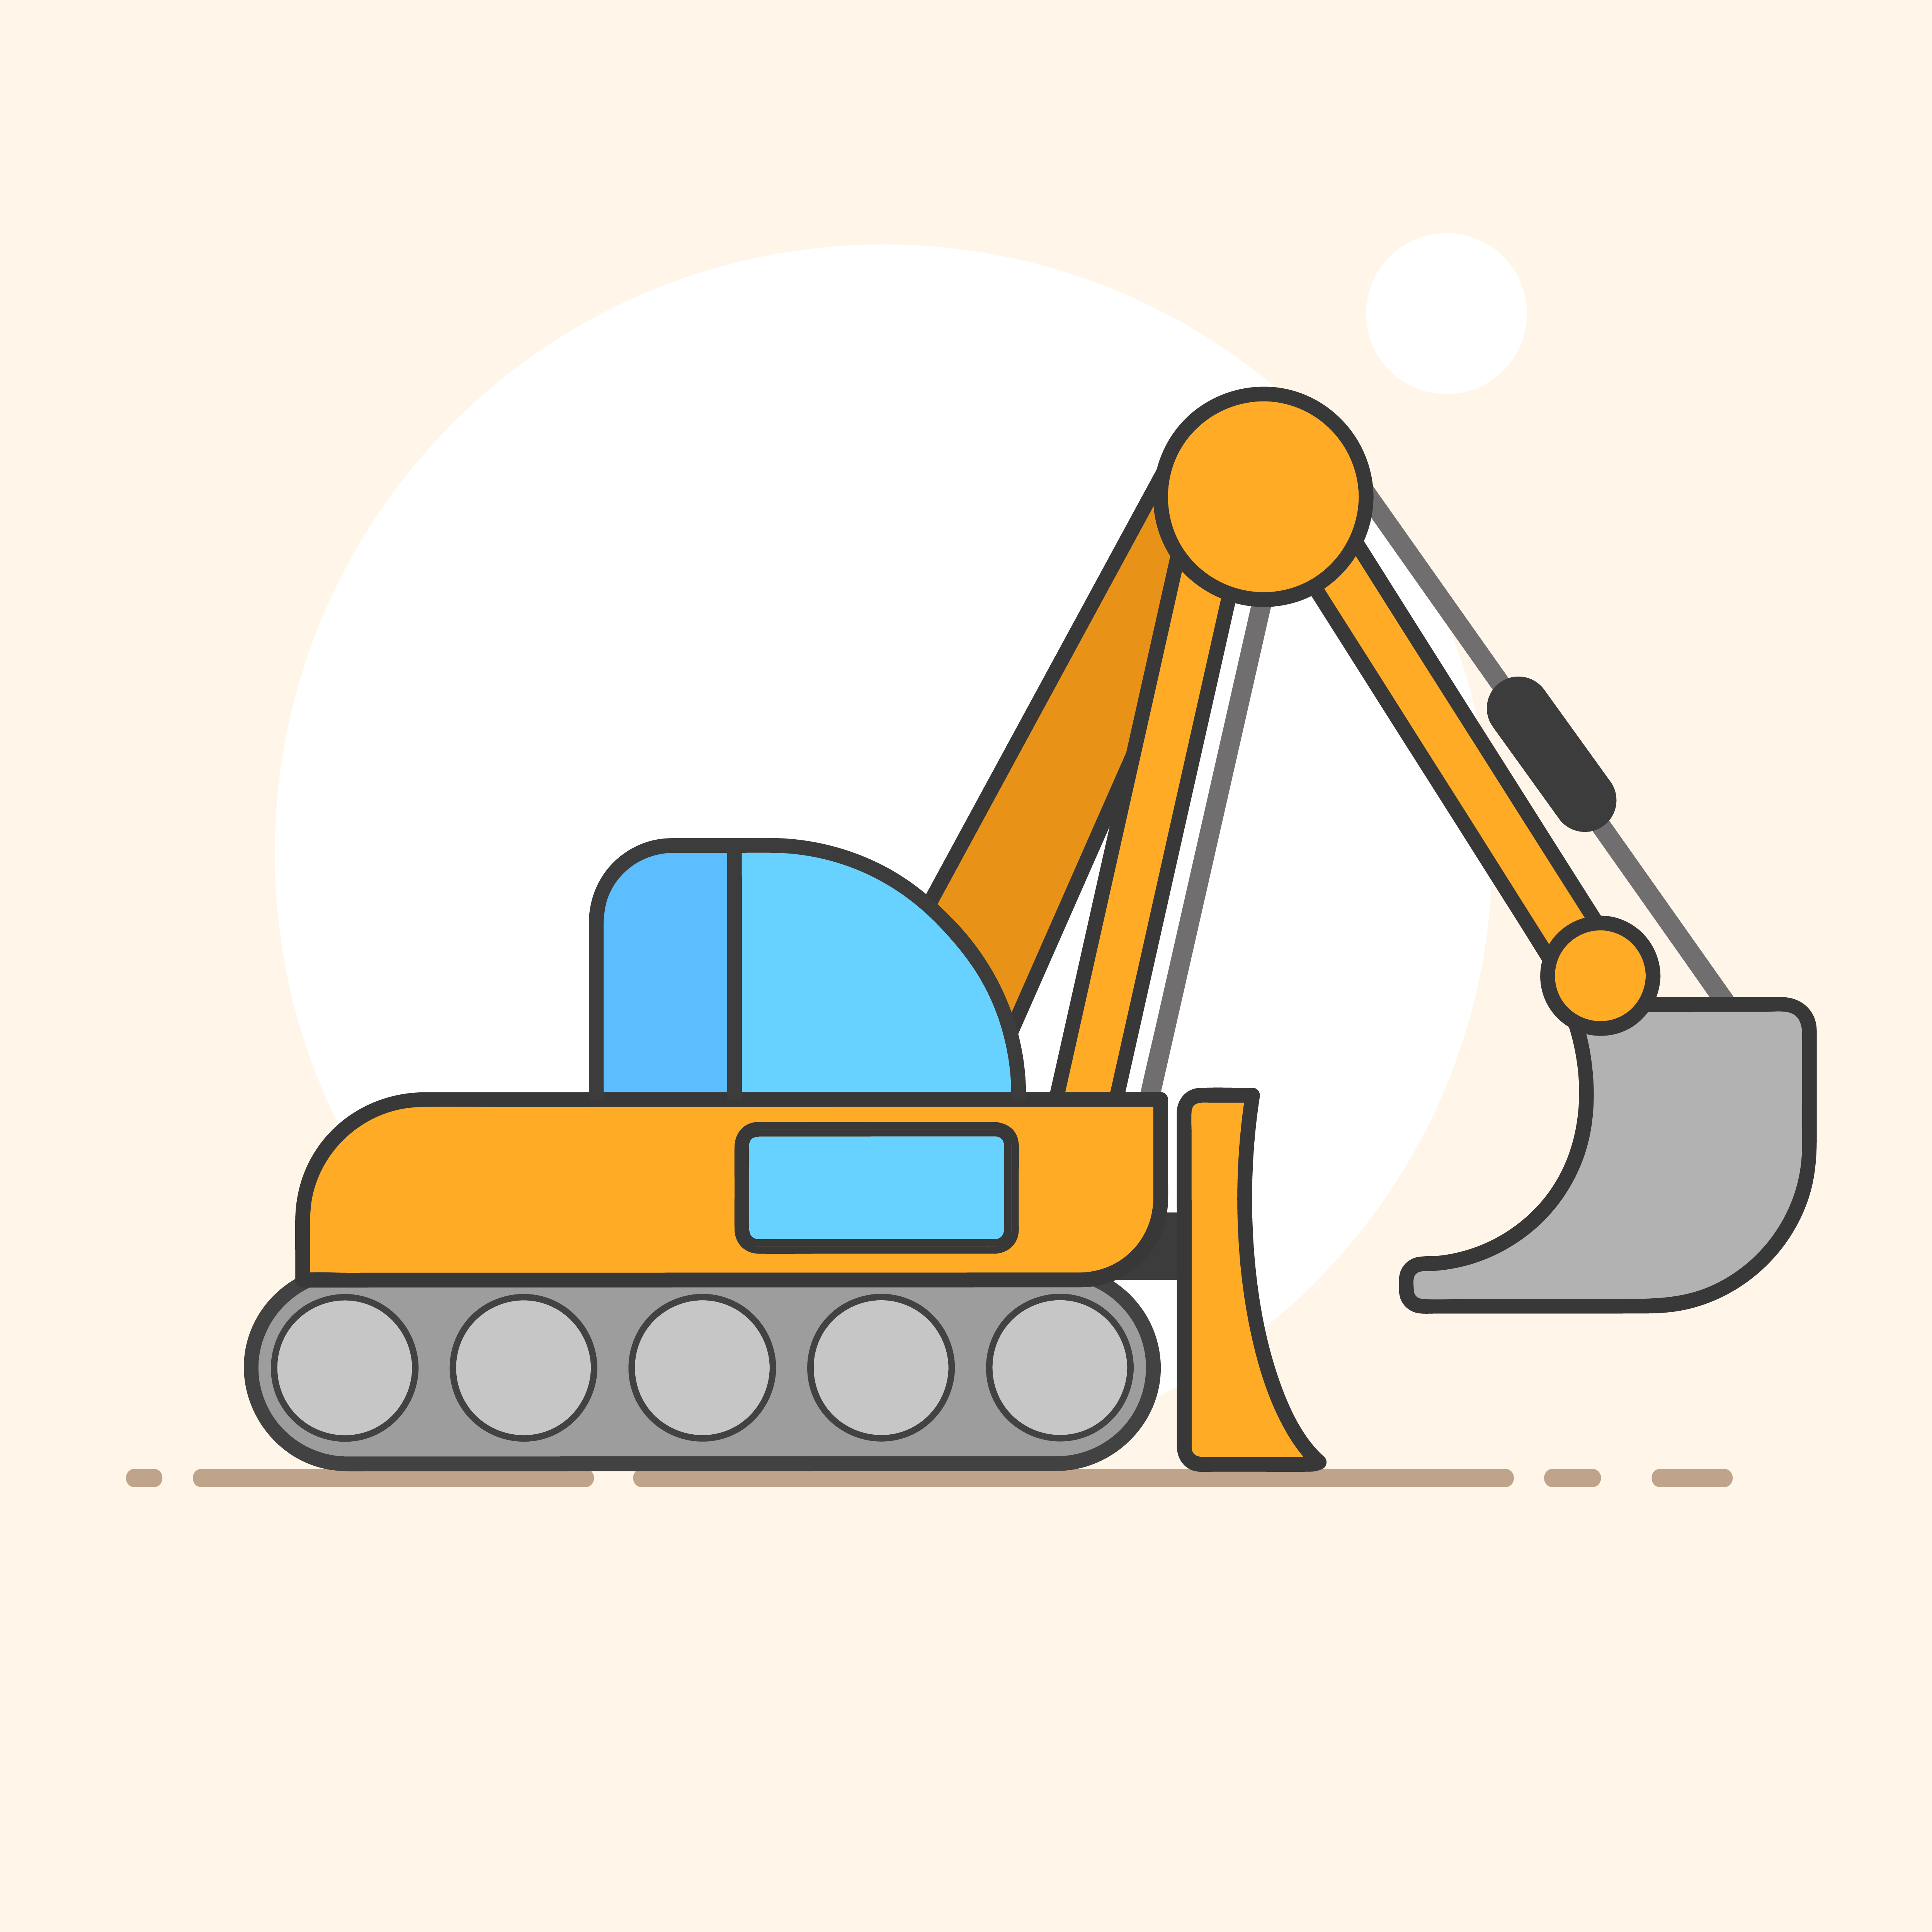 Download Excavator vector logo for your design needs. Vector ...